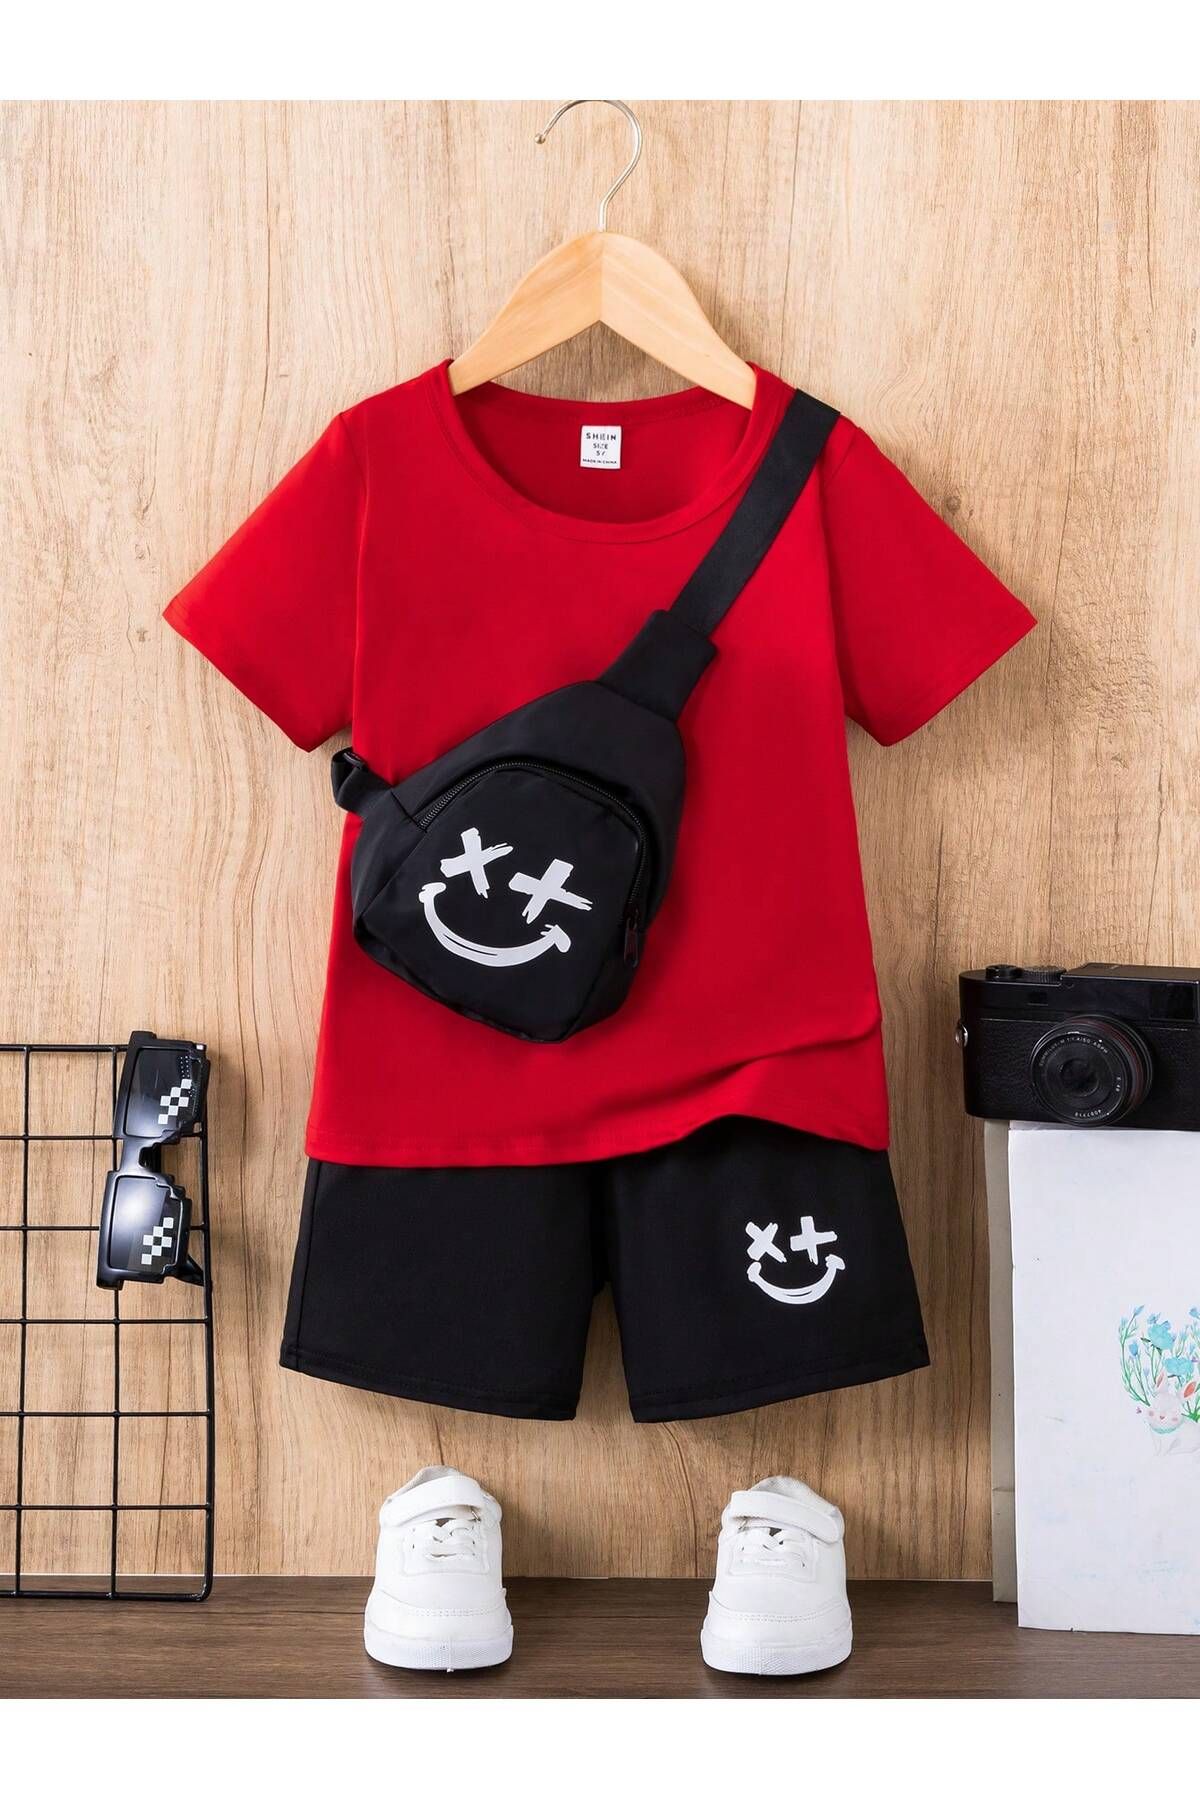 CLAYES Gülen Yüz Pamuk Çocuk Takım T-Shirt Şort - Kırmızı Siyah Baskı Kız Erkek Çocuk Yazlık Bisiklet Yaka